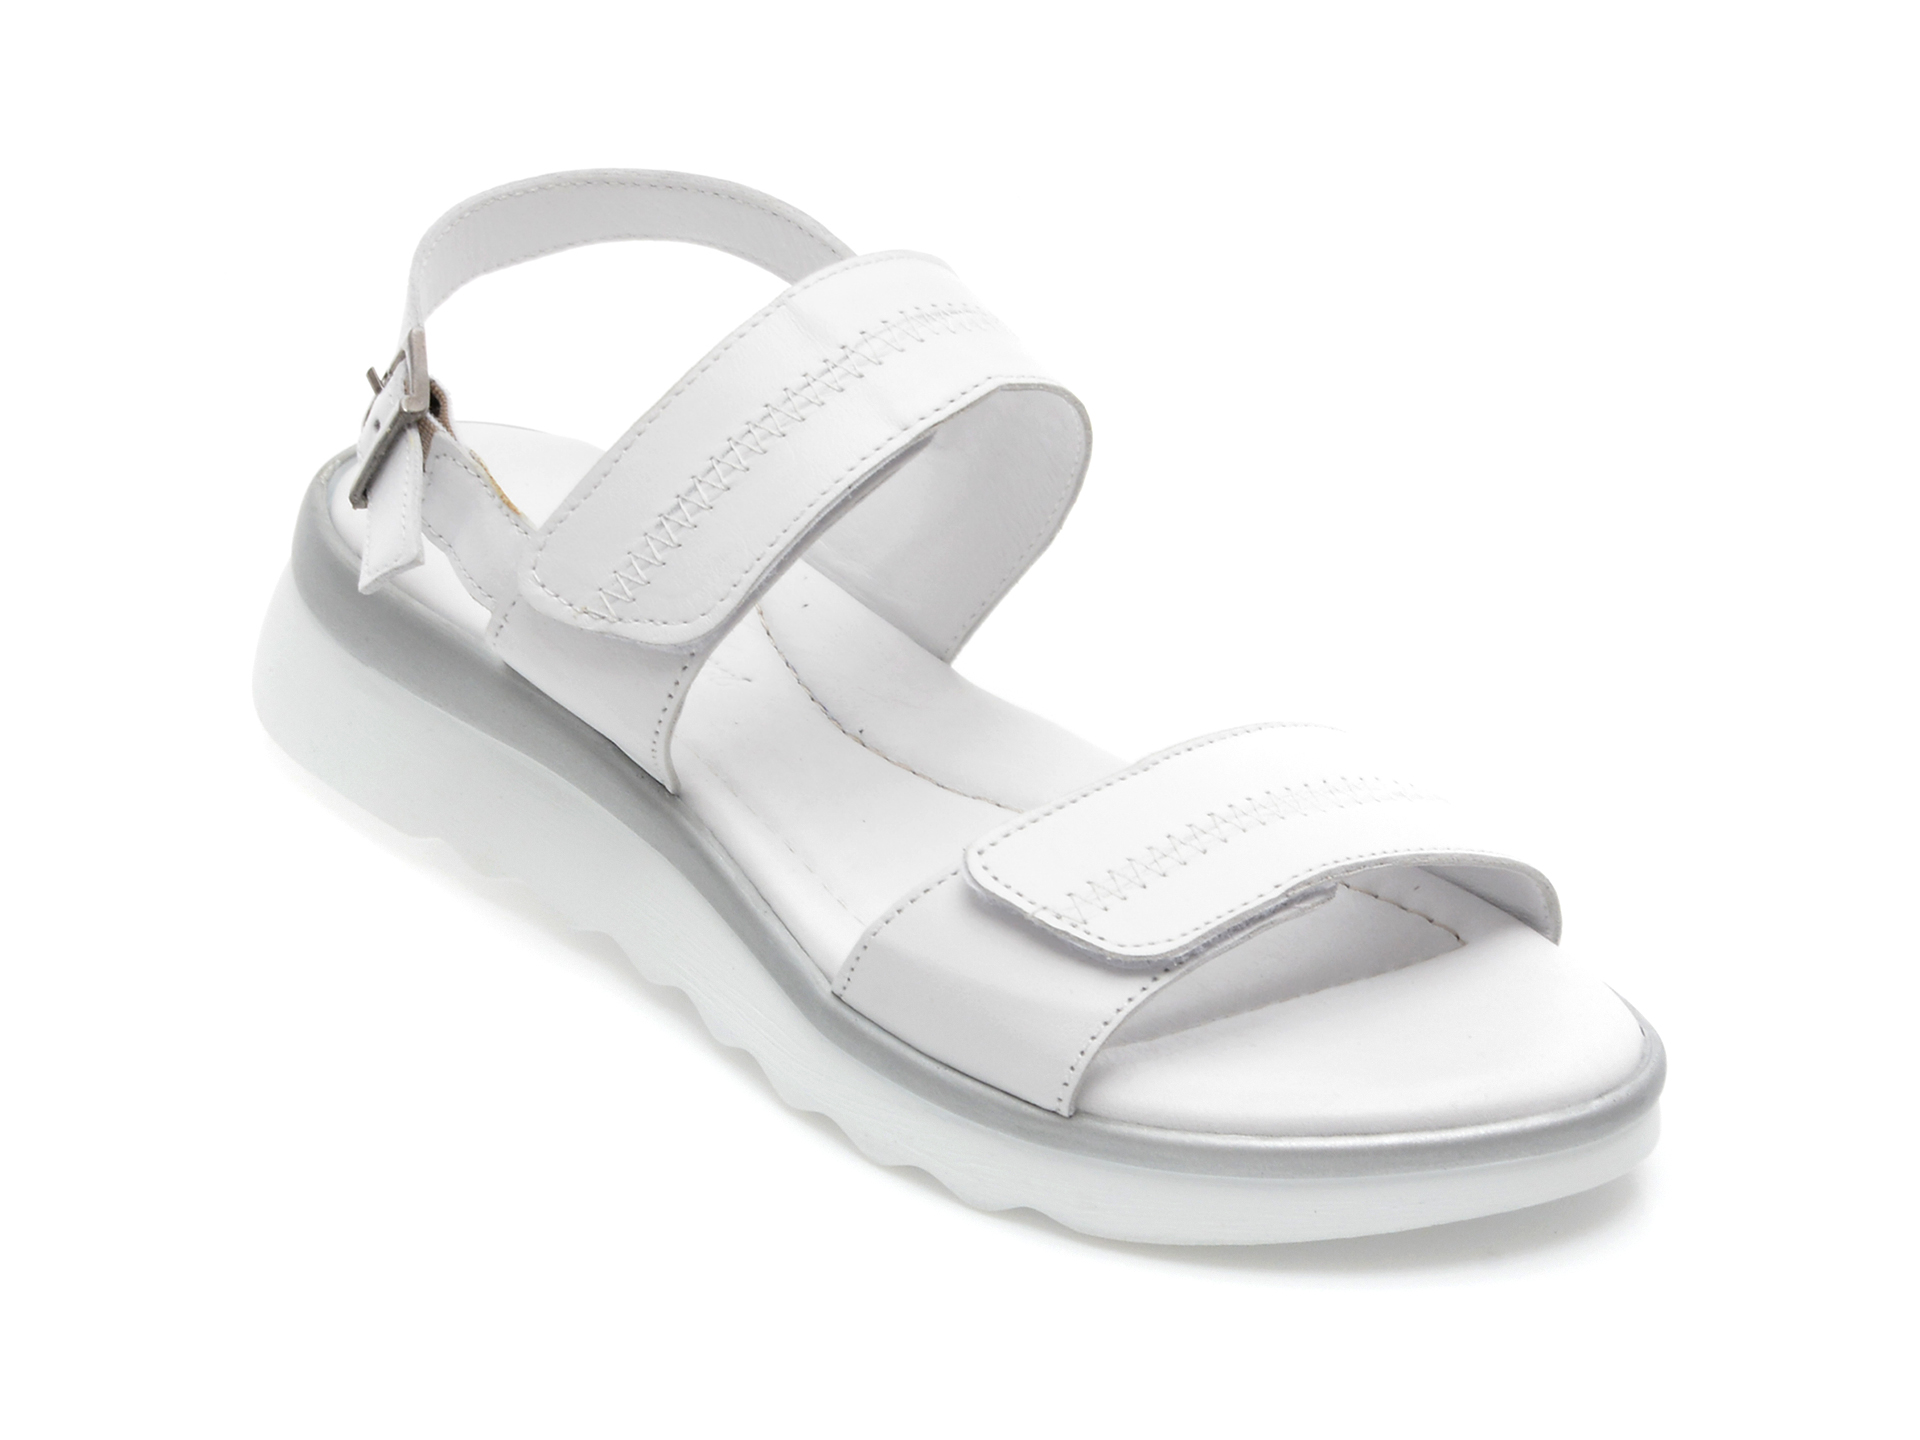 Sandale ANNA LUCCI albe, 4516, din piele naturala /femei/sandale INCALTAMINTE